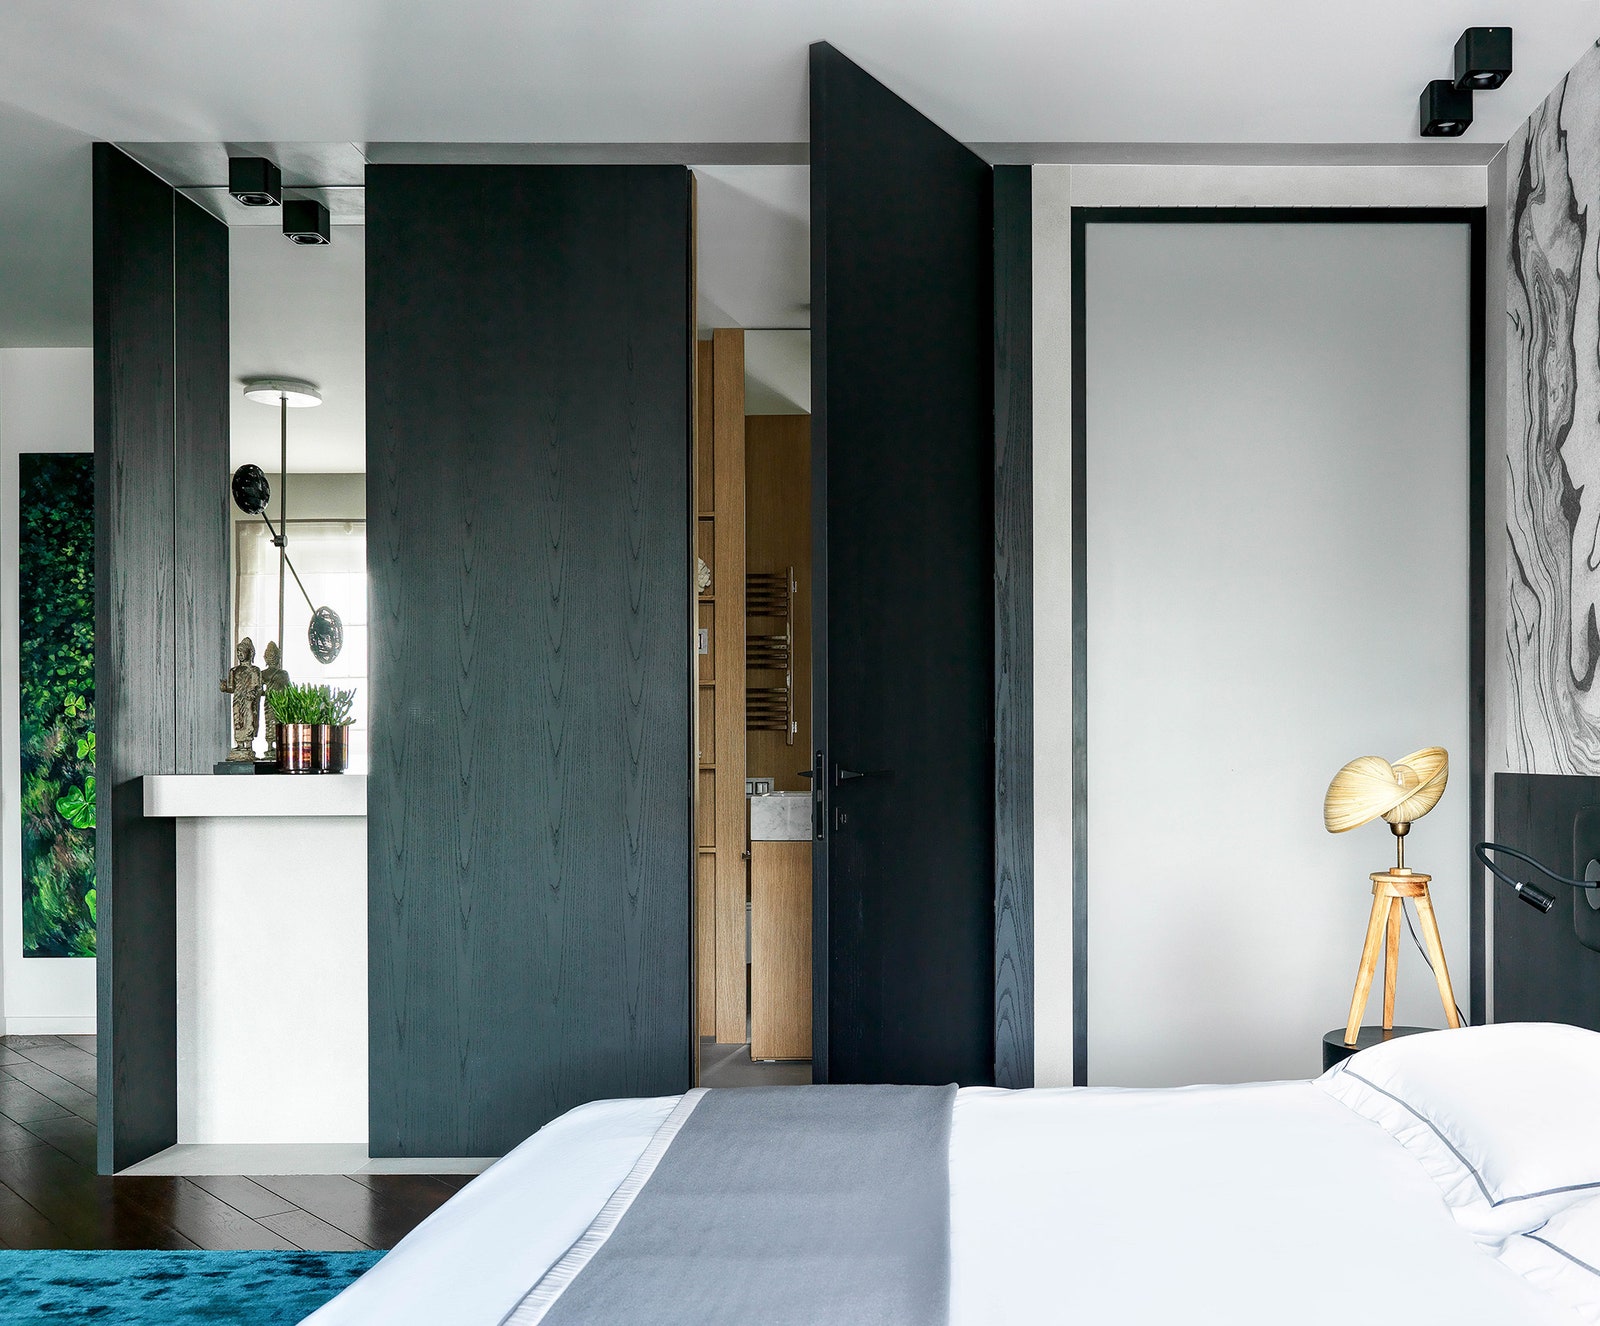 “Нам нравится эффект когда открывая черную дверь ты попадаешь в теплый медовый санузел” — говорят дизайнеры.